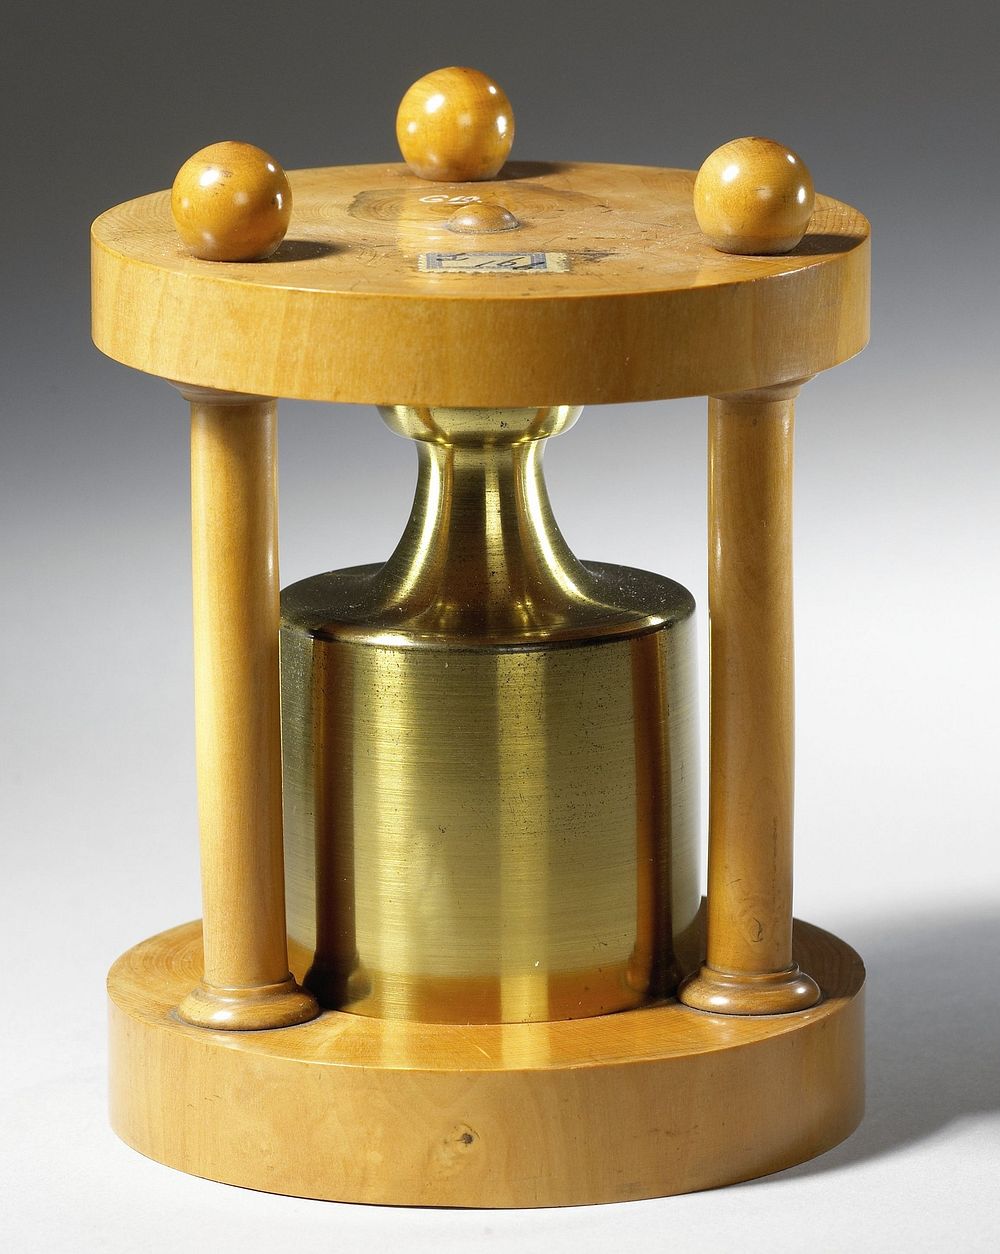 Gewicht van 1 kilogram in houten standaard (c. 1825) by anonymous